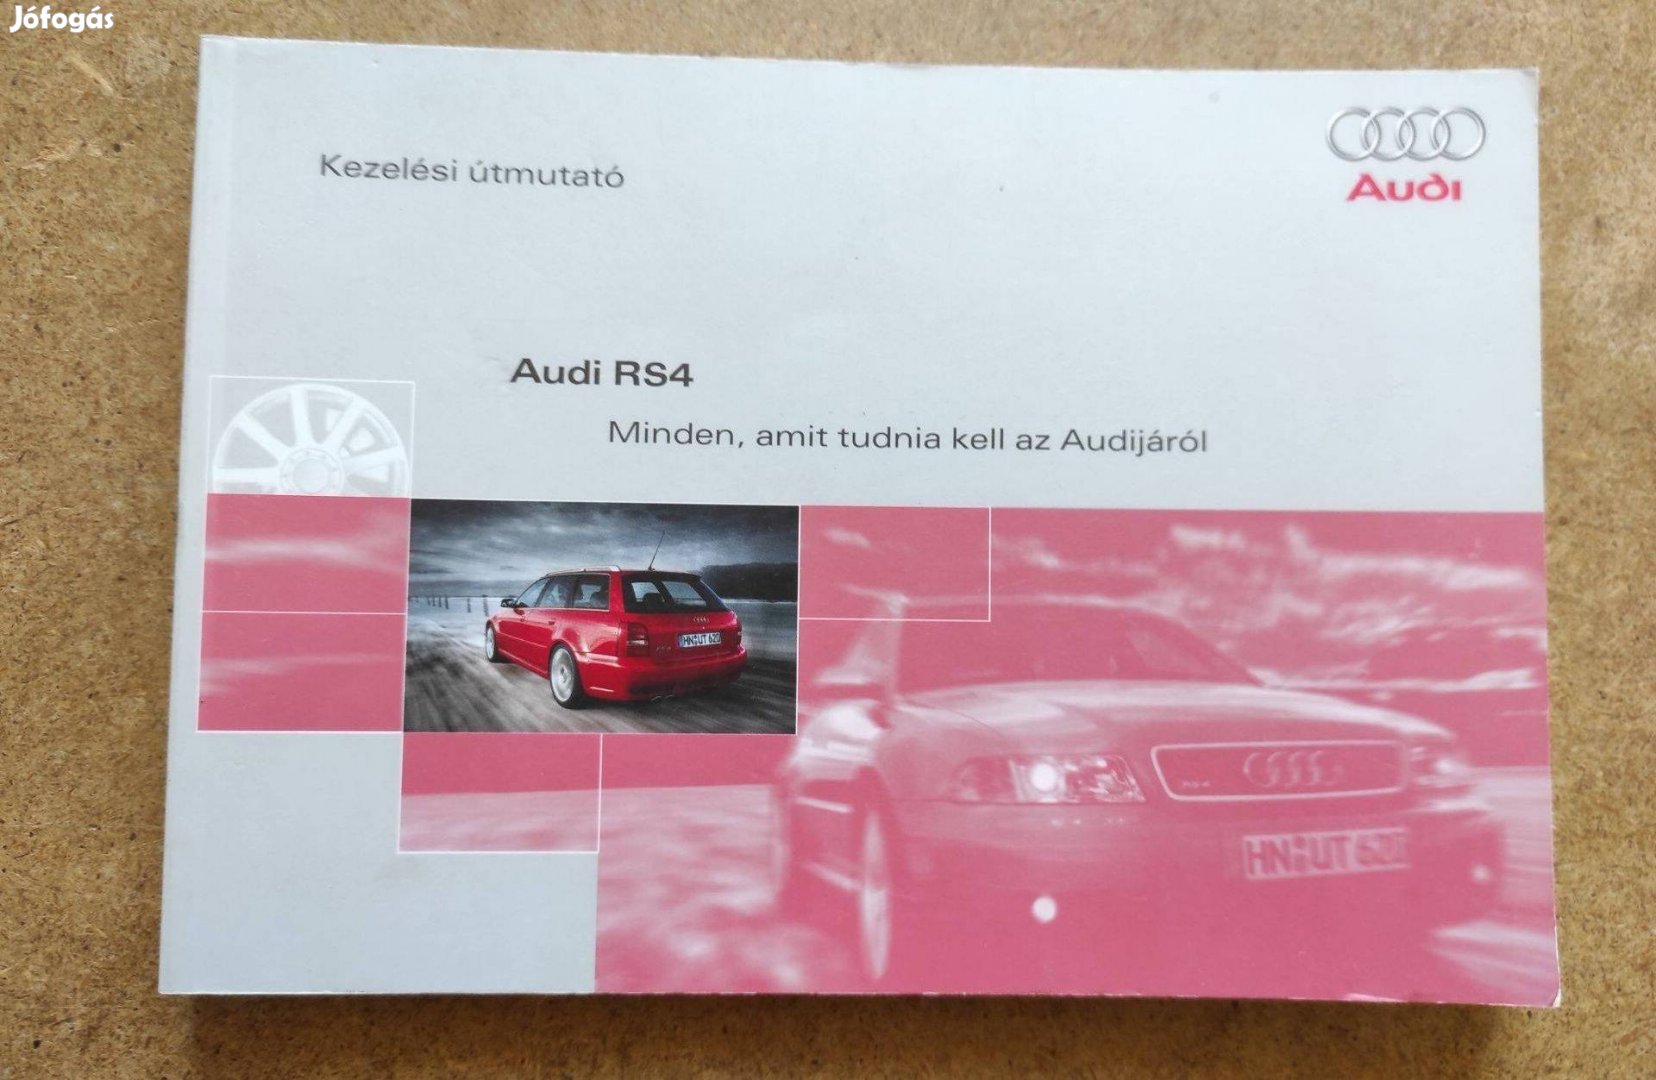 Audi RS4 kezelési utasítás. 2000-